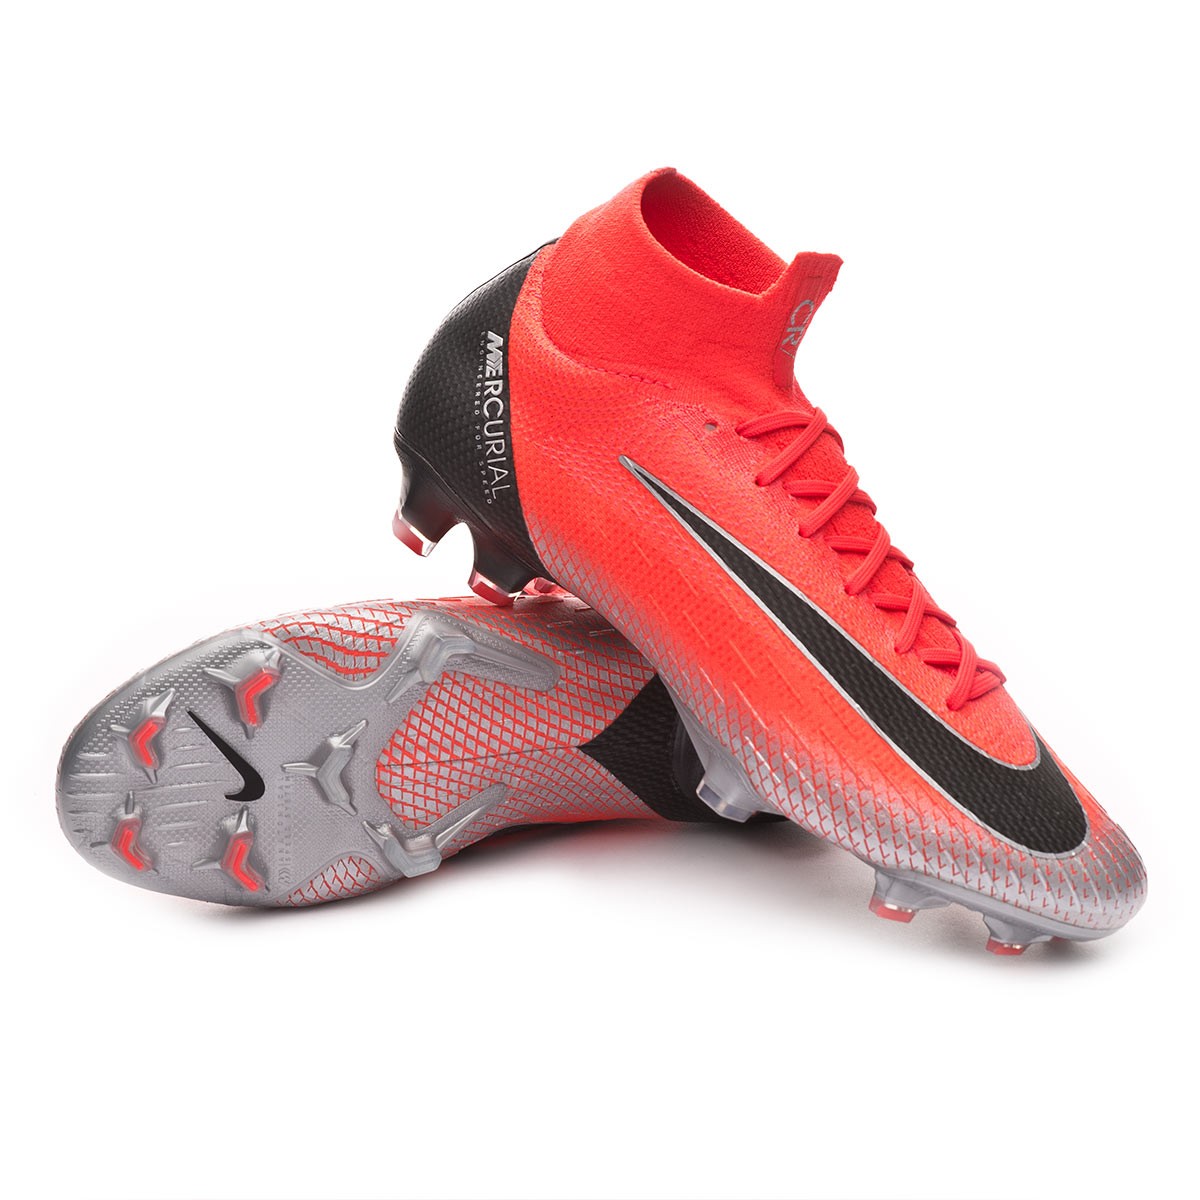 Zapatos de fútbol Nike Mercurial Superfly VI Elite CR7 FG Flash  crimson-Black-Total crimson - Tienda de fútbol Fútbol Emotion